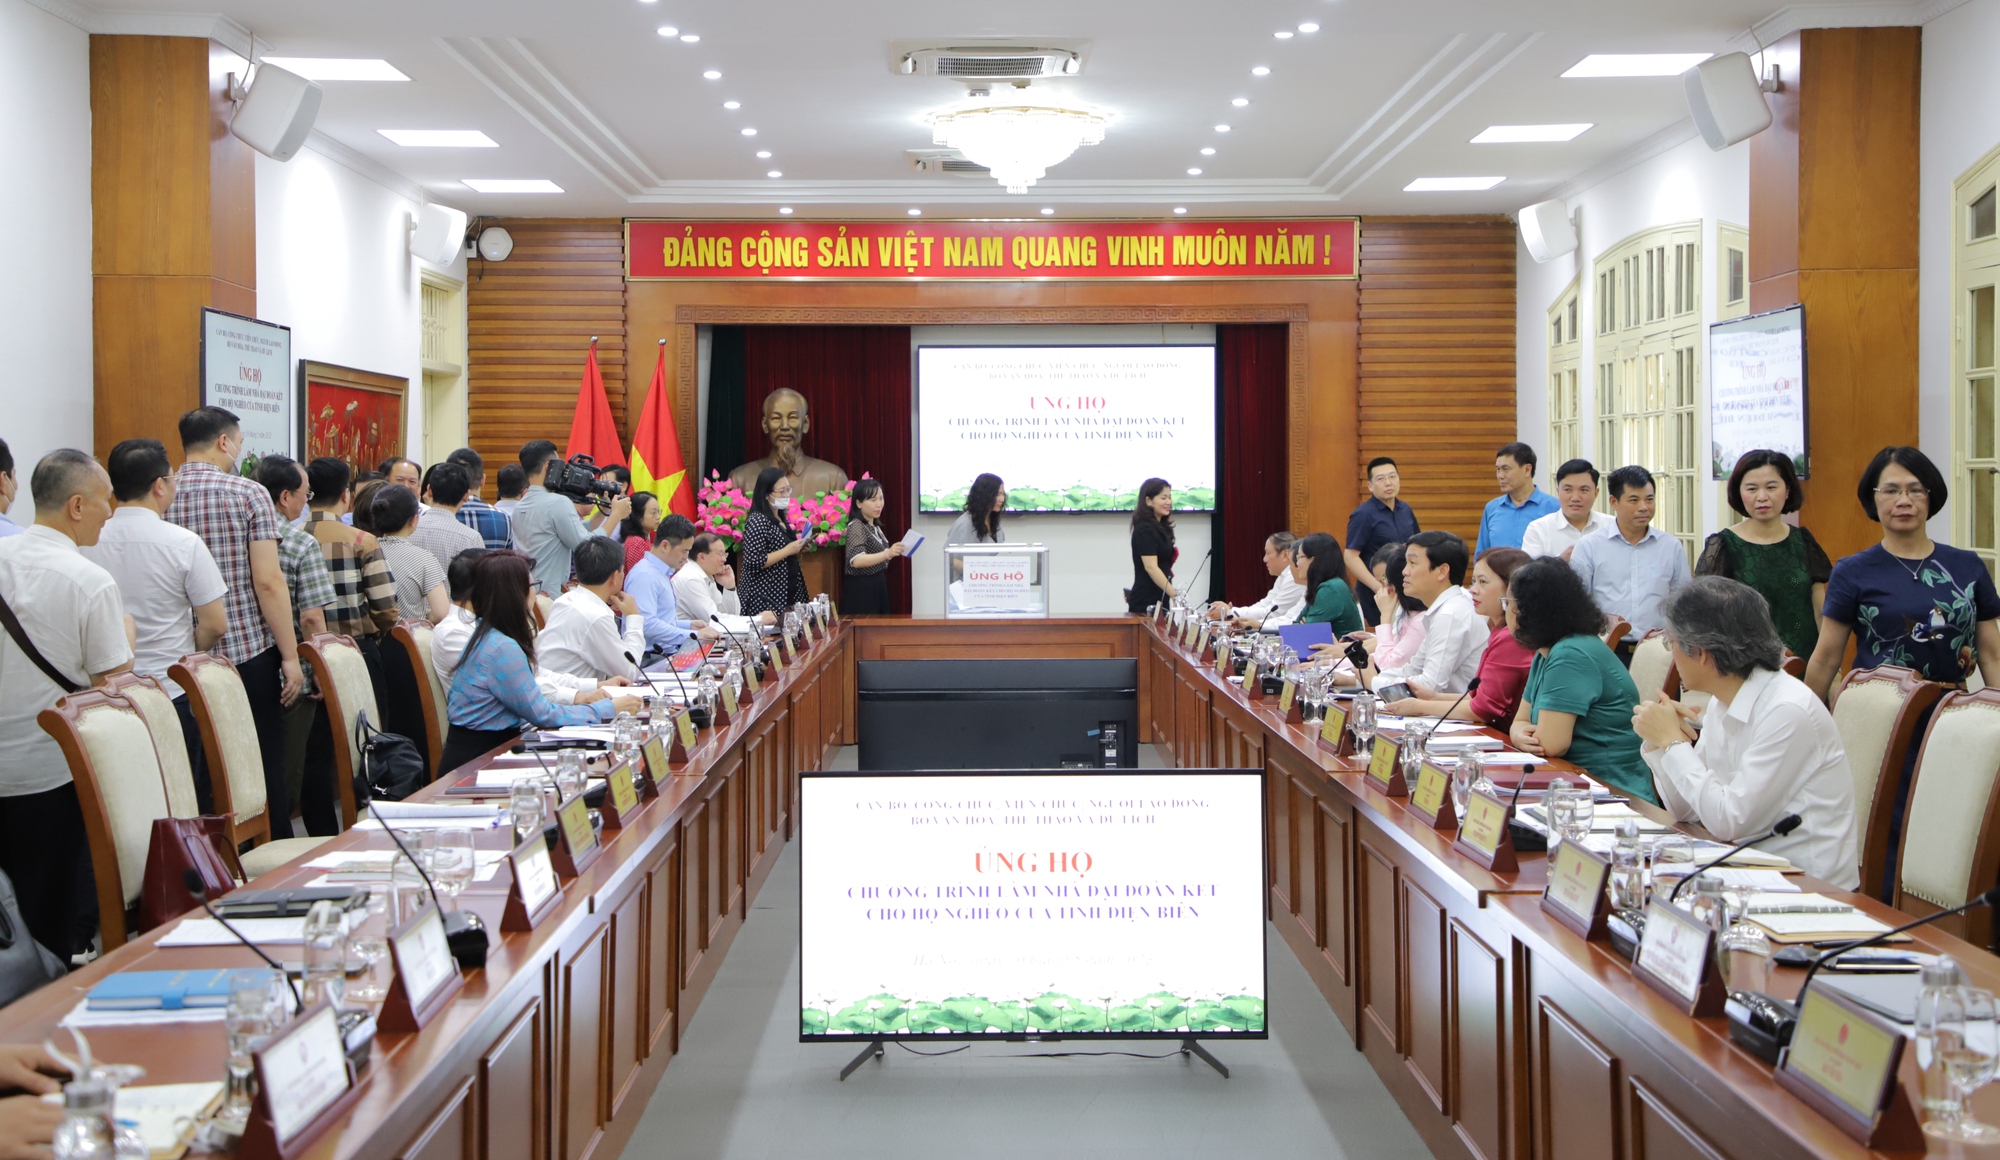 Bộ VHTTDL ủng hộ Chương trình xây nhà đại đoàn kết cho hộ nghèo của tỉnh Điện Biên - Ảnh 9.